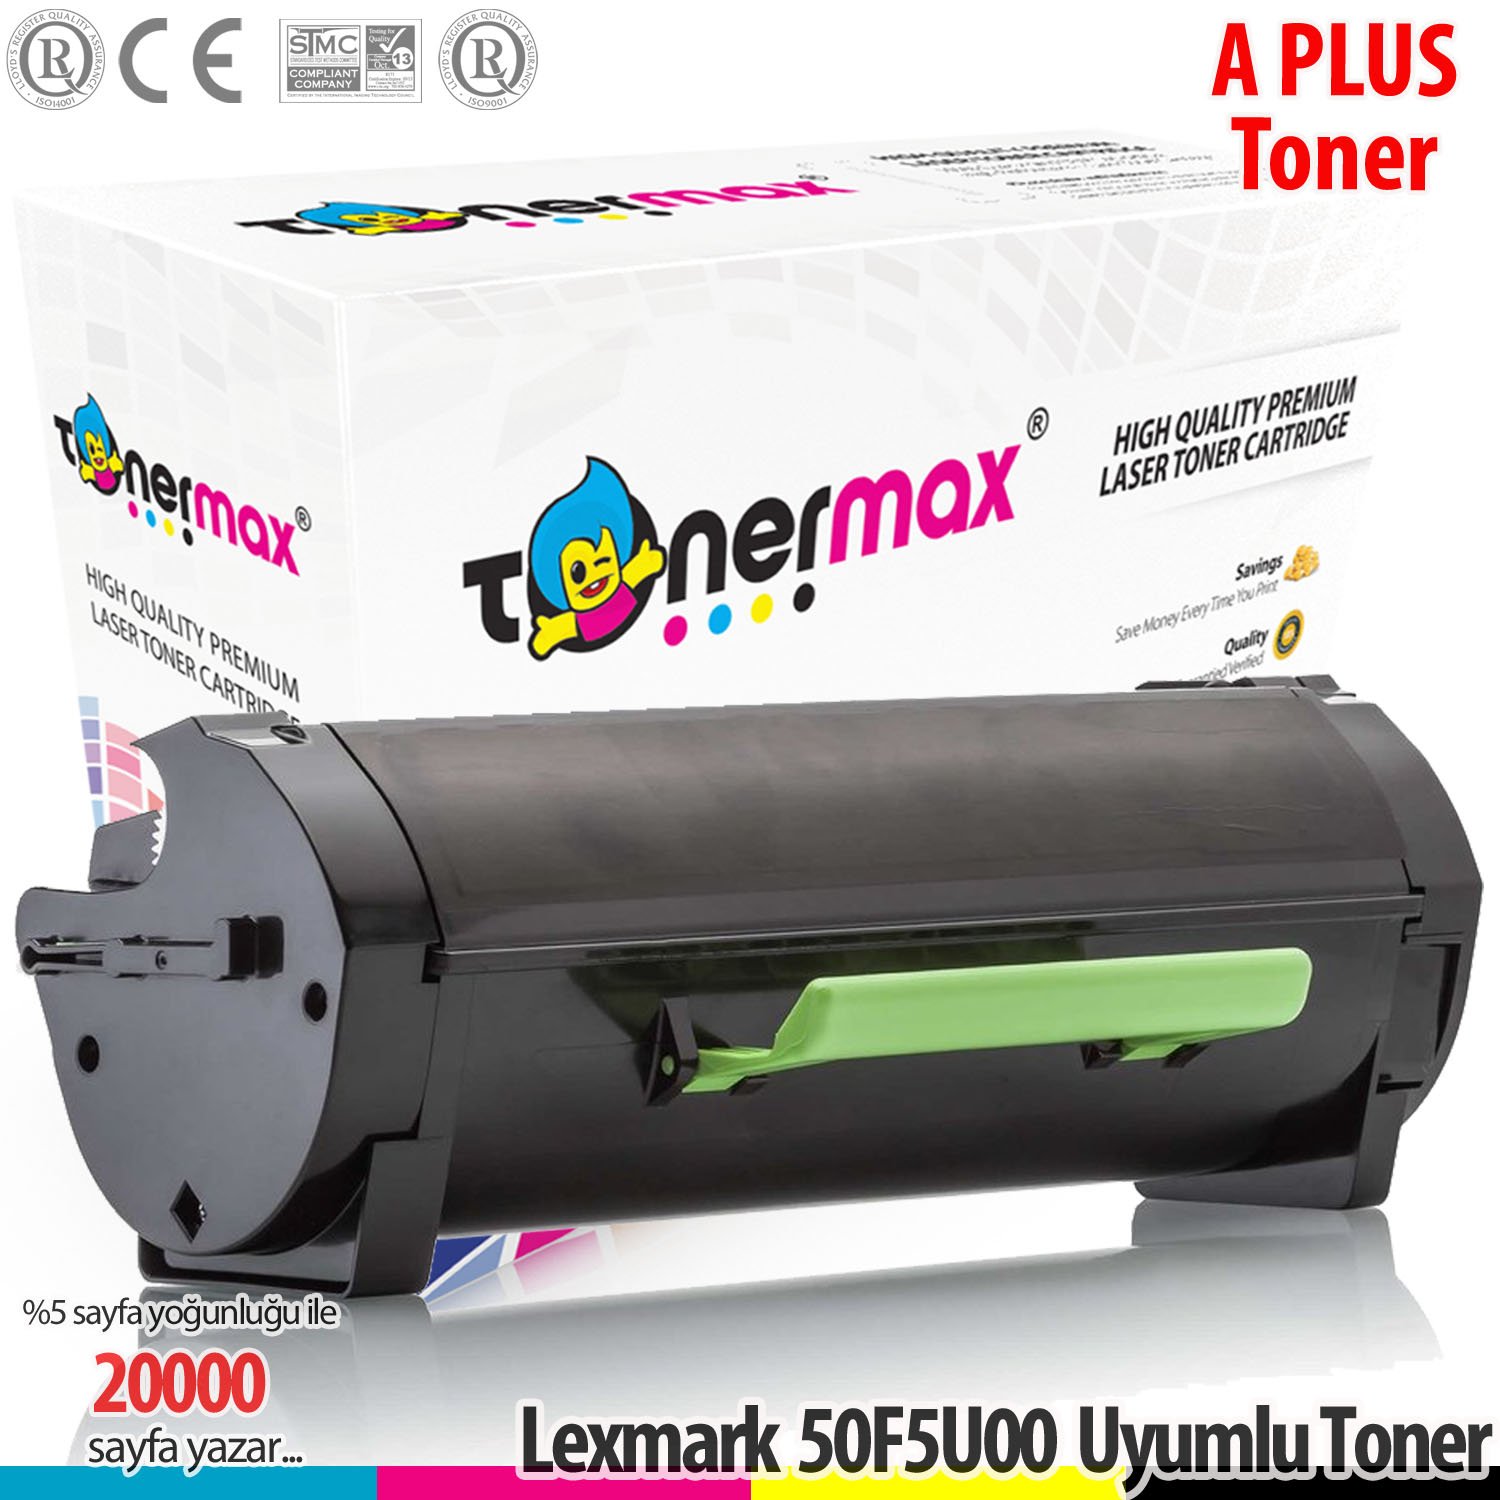 Lexmark 505U / 50F5U00 / MS510 / MS610 A Plus Muadil Toner 20K